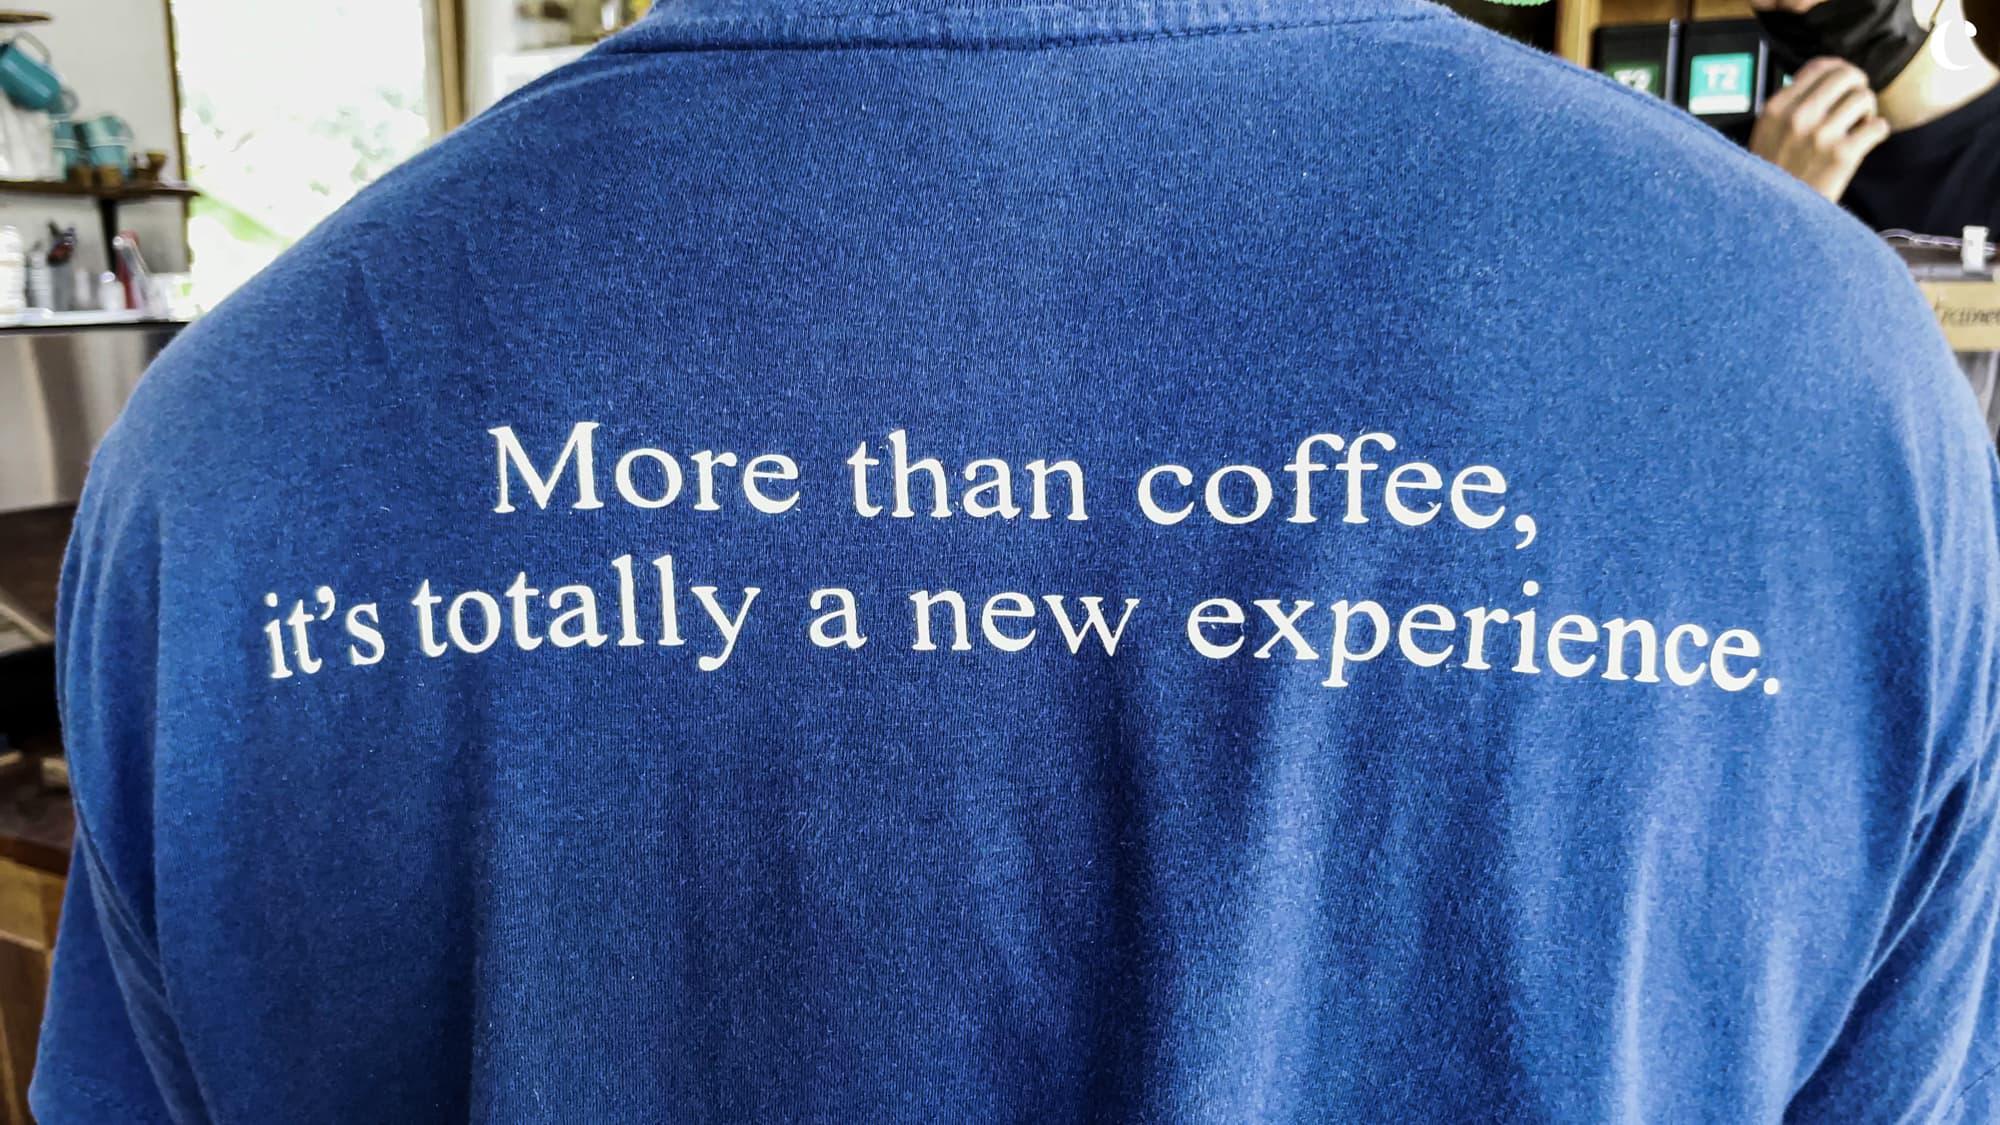 คติของ Bluetamp cafe มากกว่ากาแฟ คือการสร้างประสบการณ์ใหม่ให้กับลูกค้า